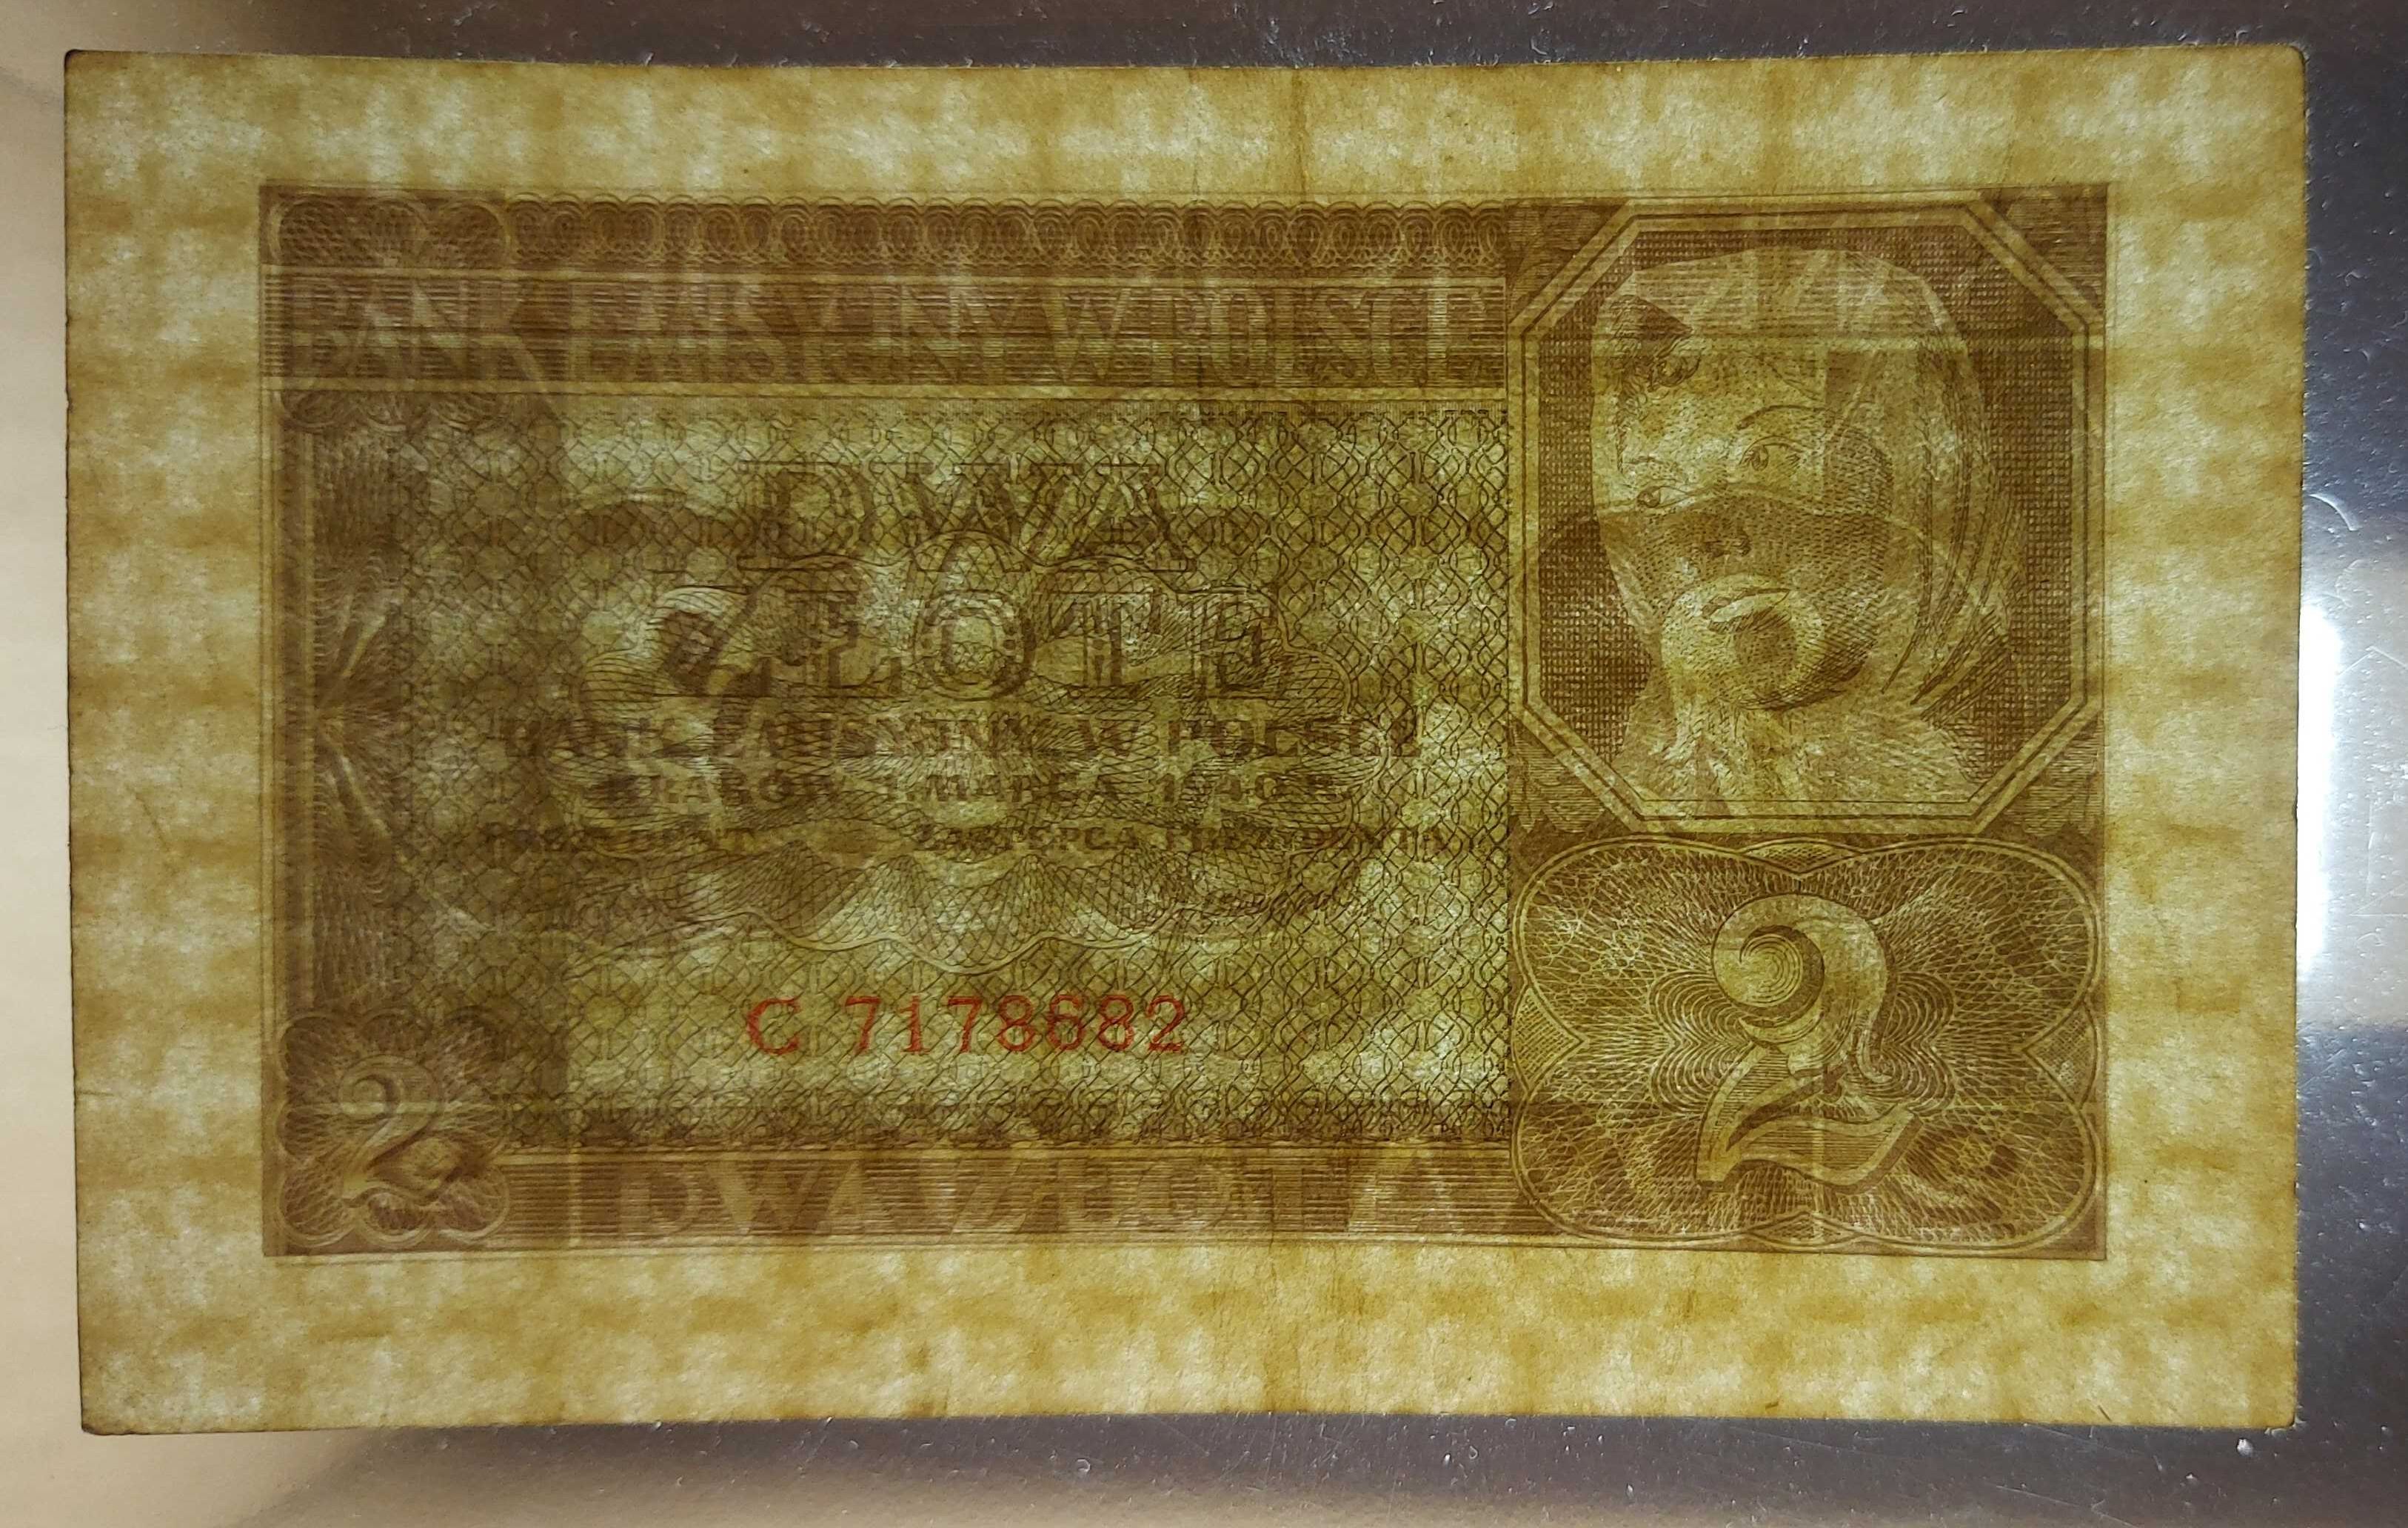 Banknot 2 złote z 1940 roku.